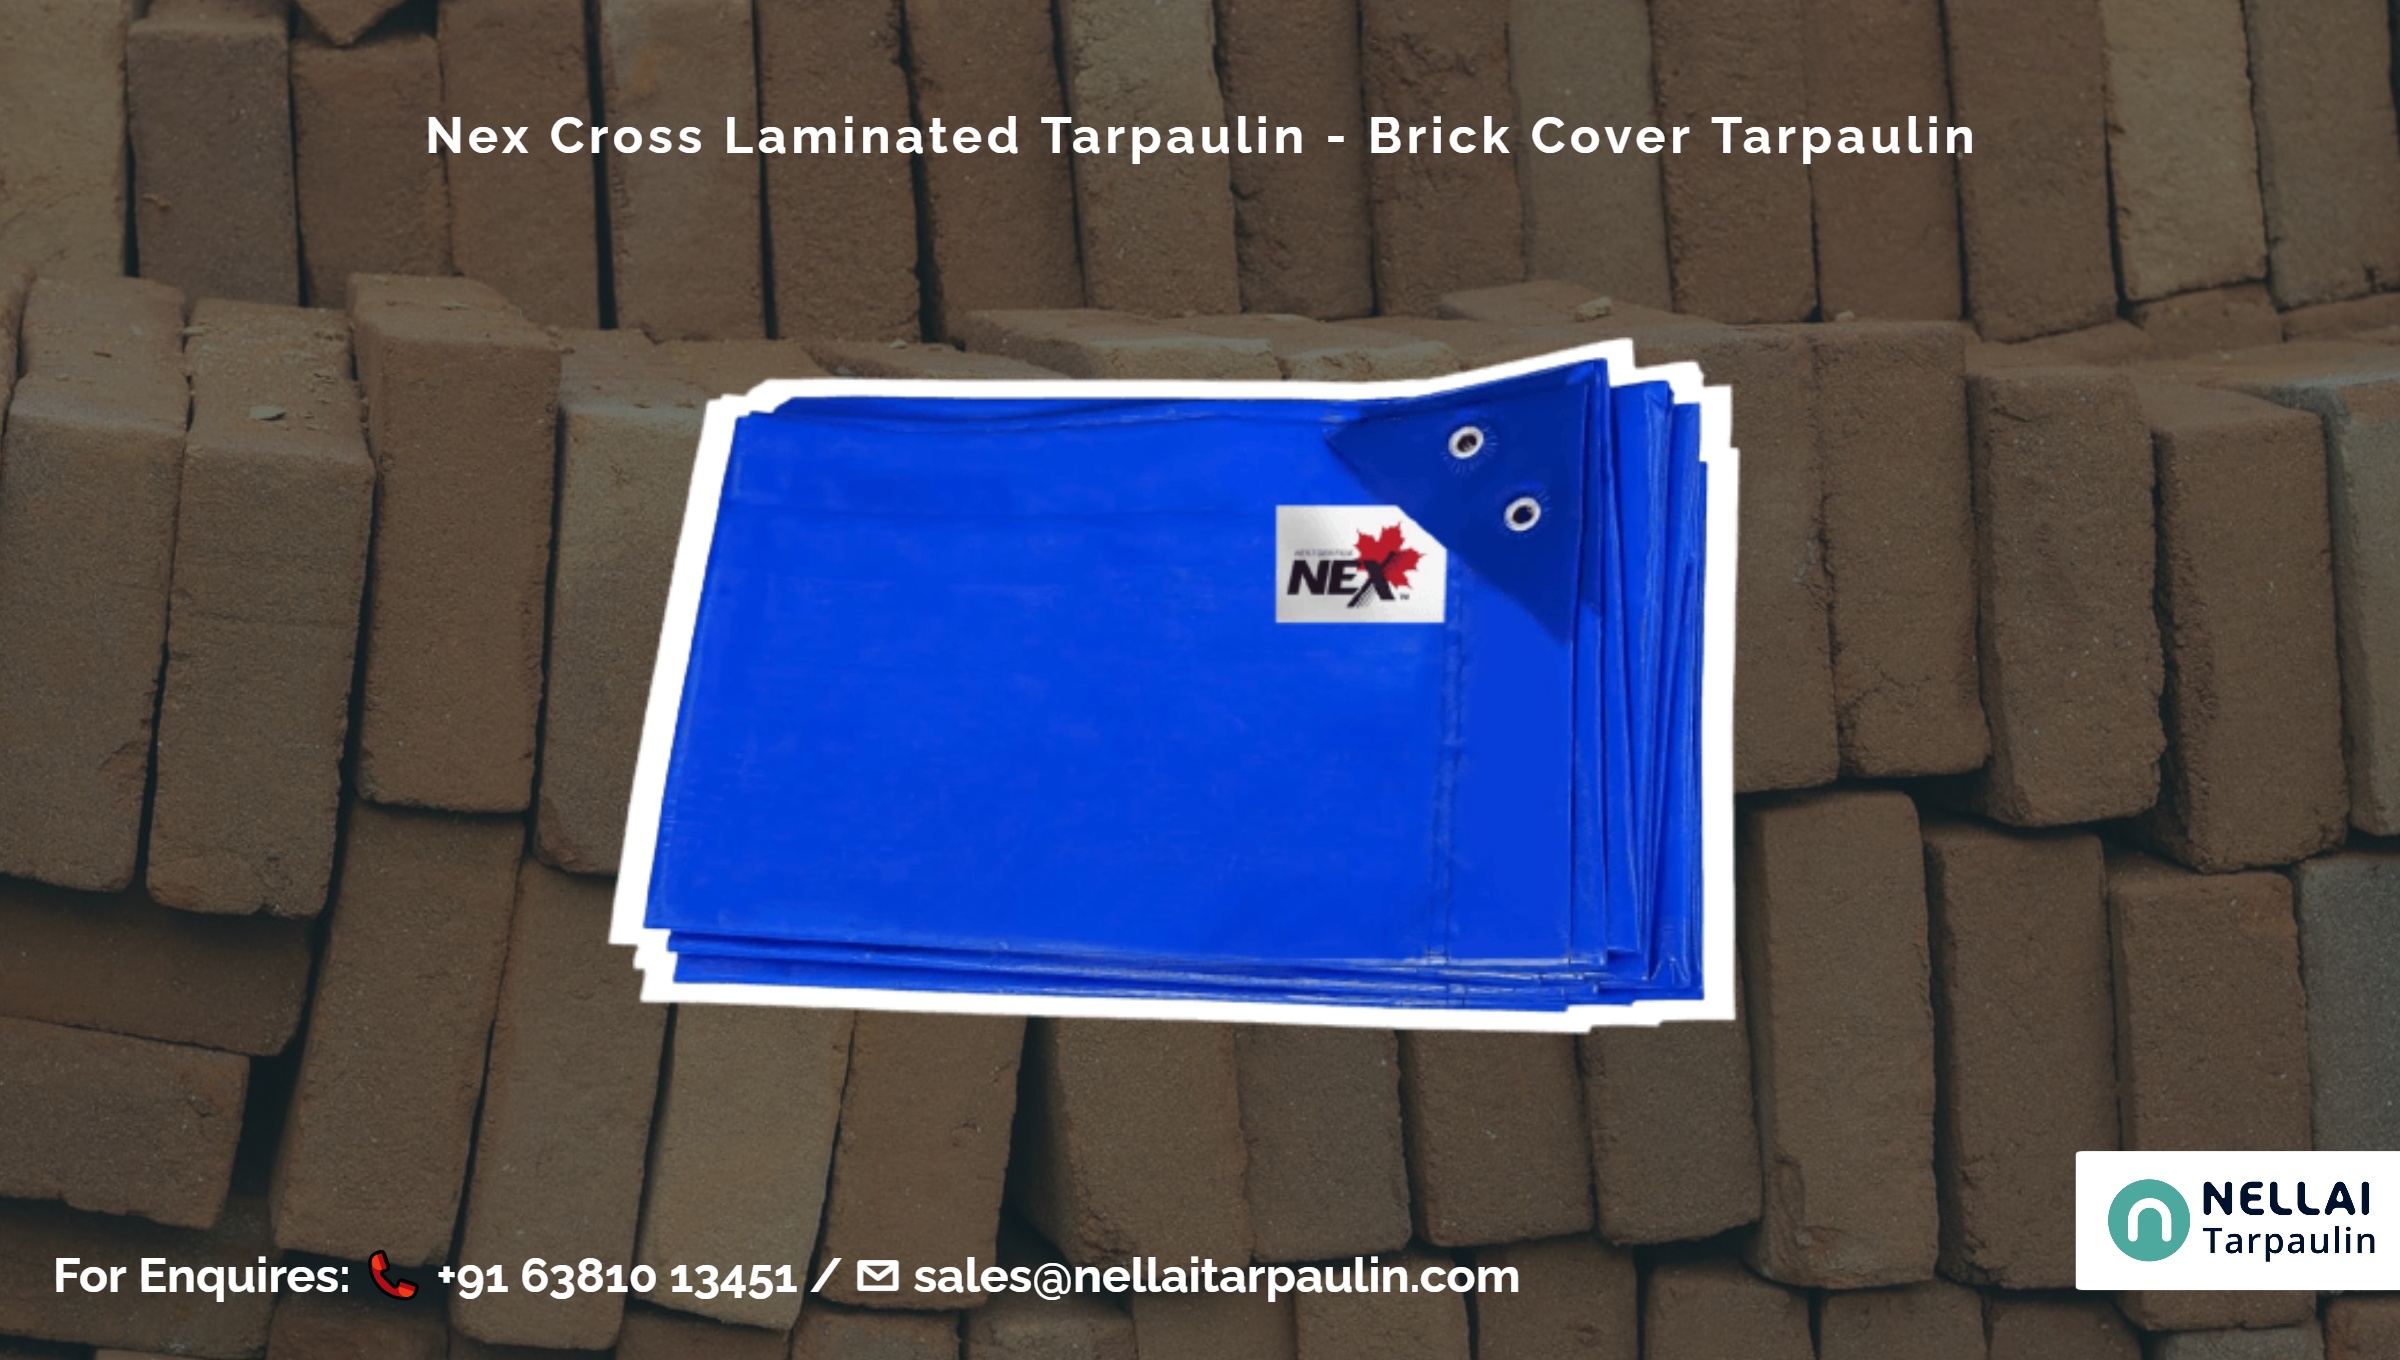 Nex Cross Laminated Tarpaulin - Brick Cover Tarpaulin